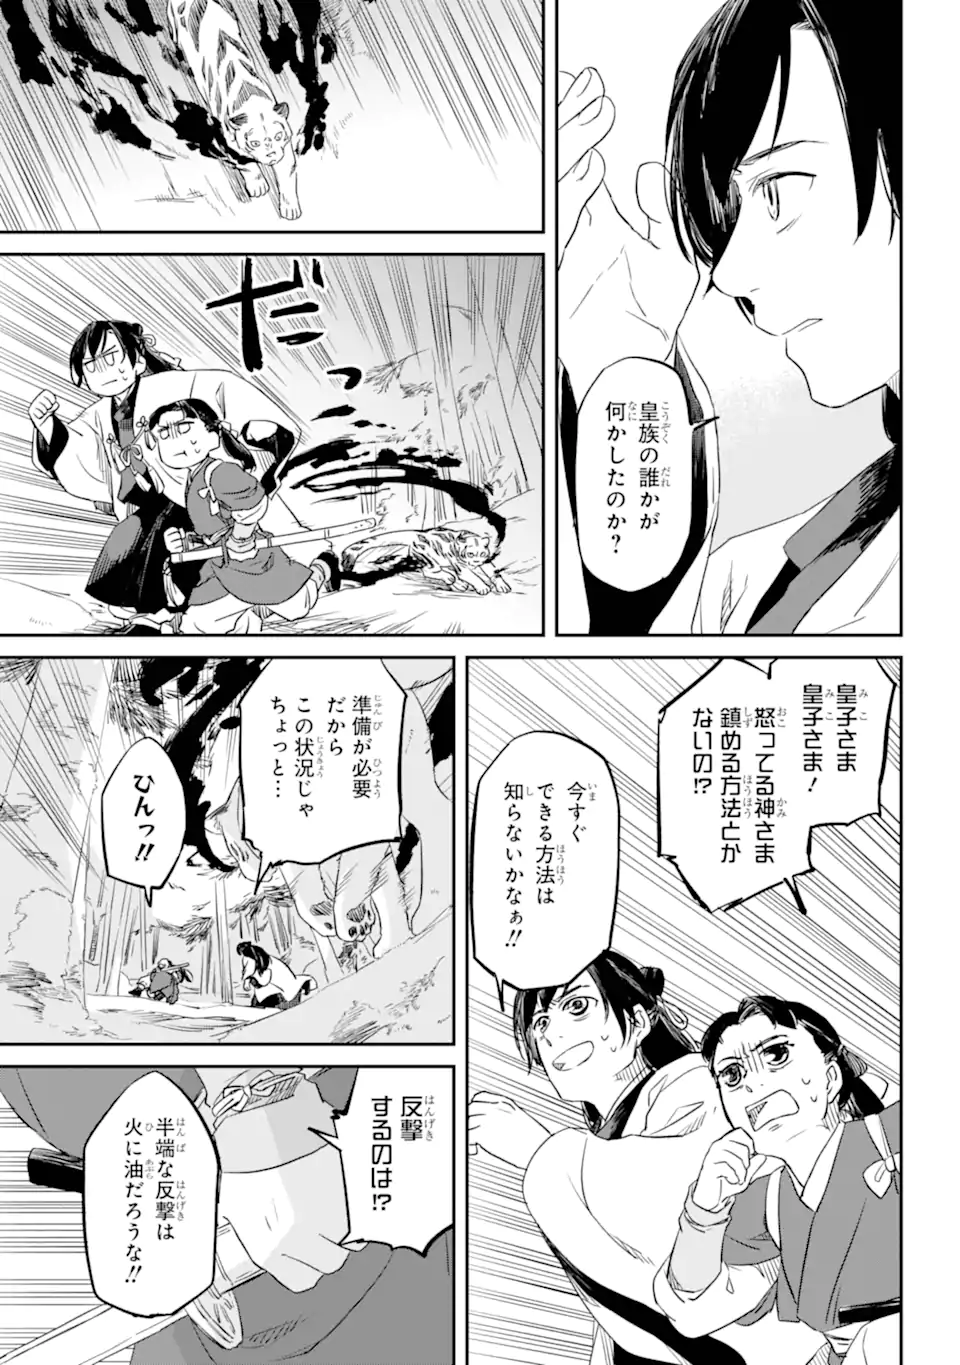 Ryuujin no Musume - Chapter 1.3 - Page 2